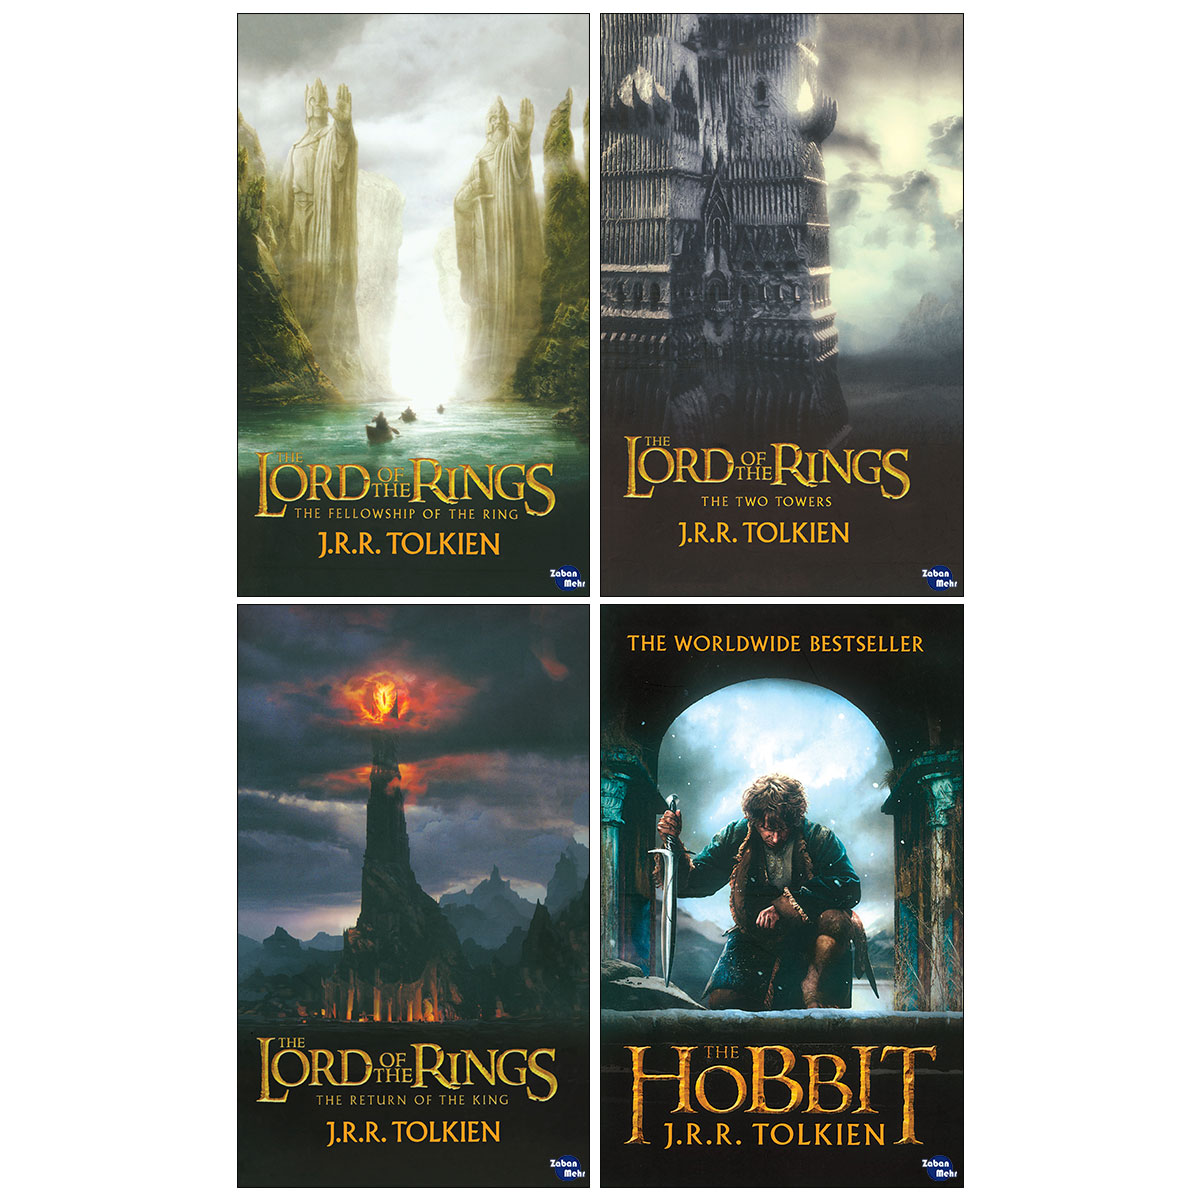 نقد و بررسی کتاب Lord of the Rings اثر J. R. R. Tolkien انتشارات زبان مهر 4 جلدی توسط خریداران